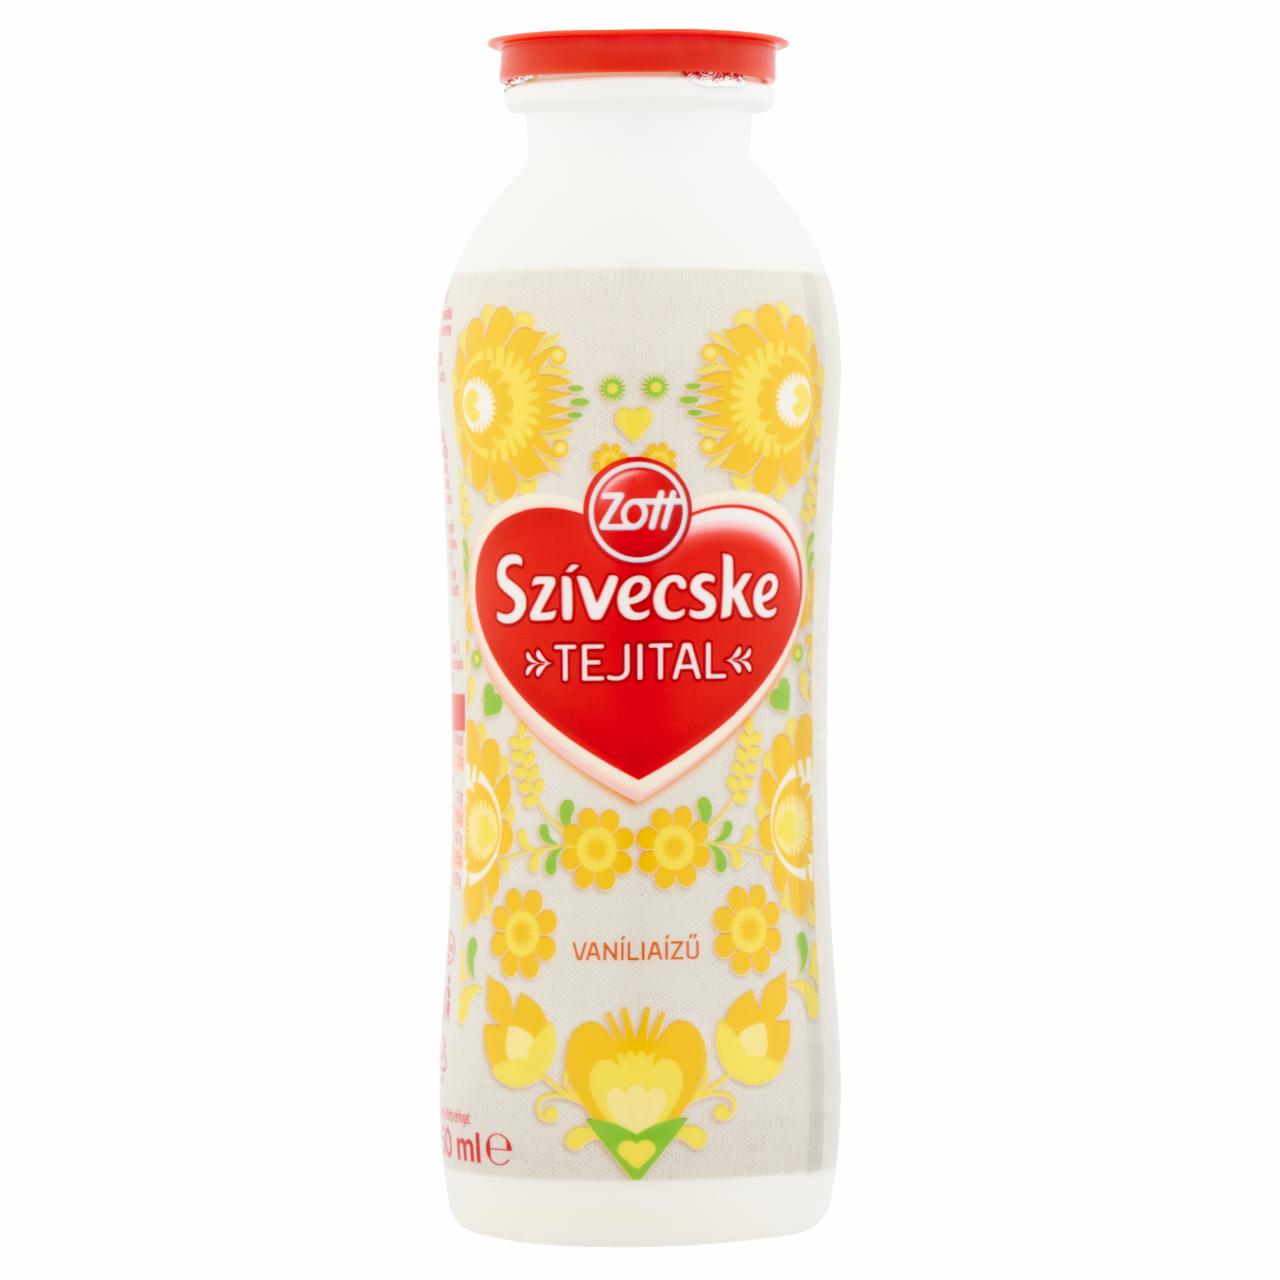 Képek - Zott Szívecske zsírszegény vaníliaízű tejital 250 ml